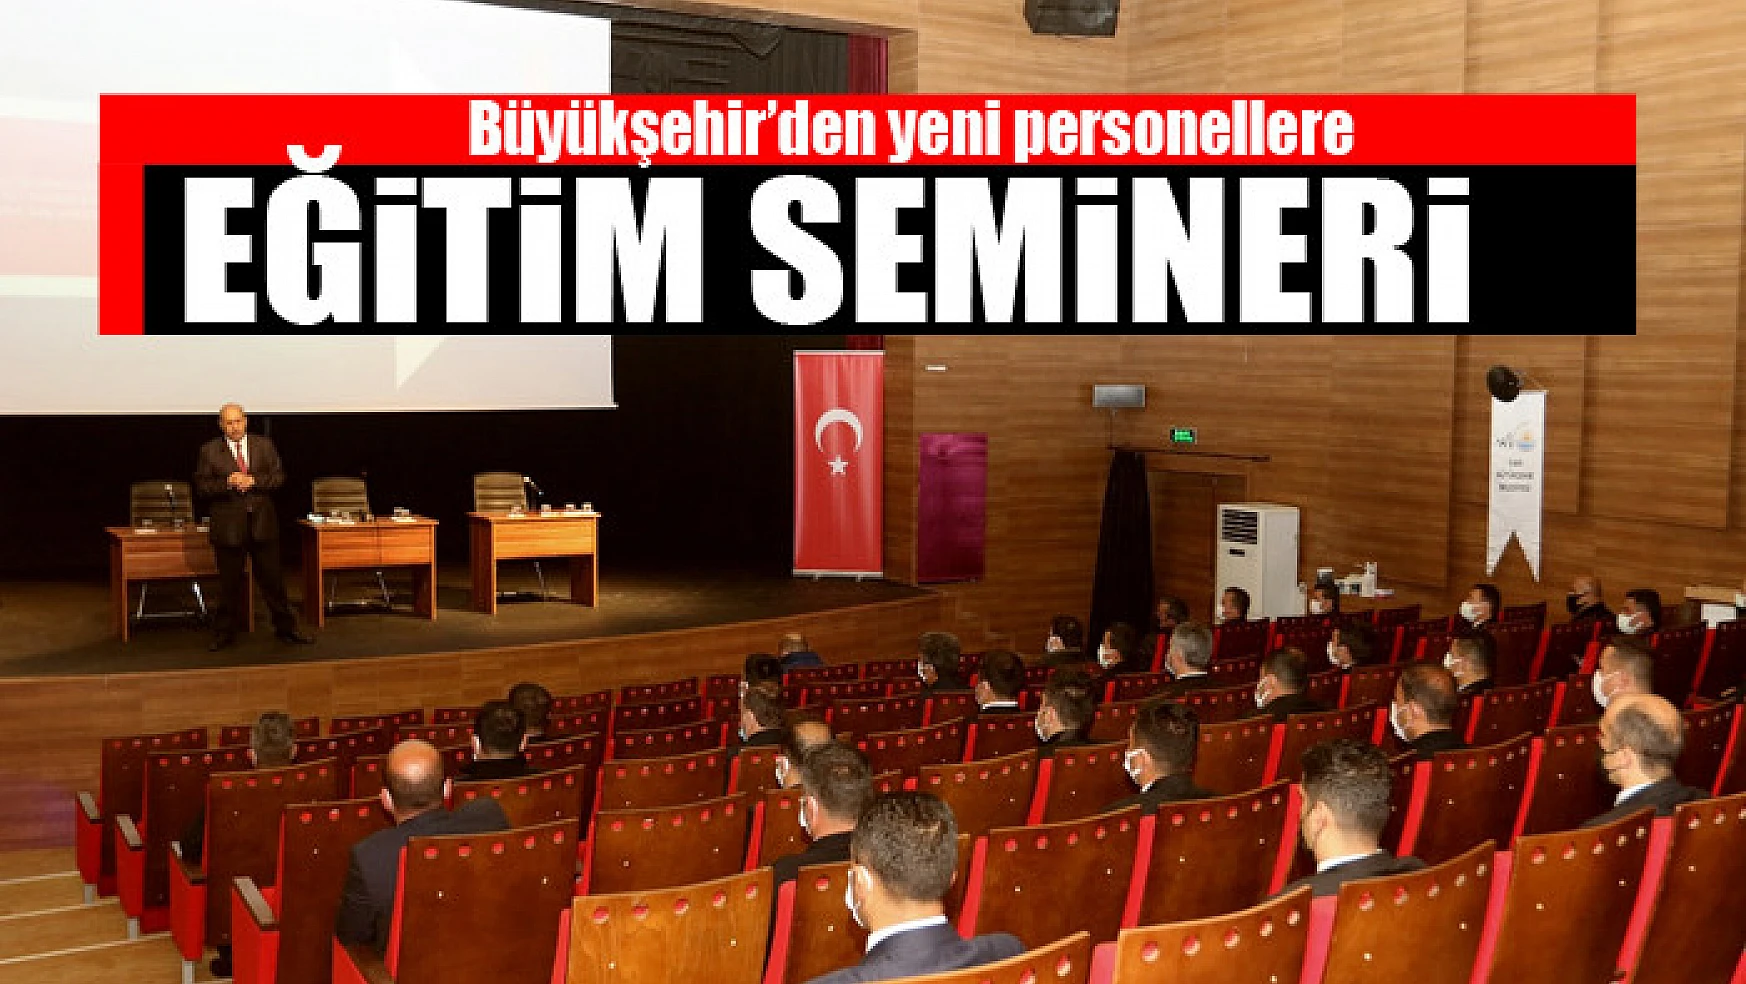 Büyükşehir'den yeni personellere eğitim semineri